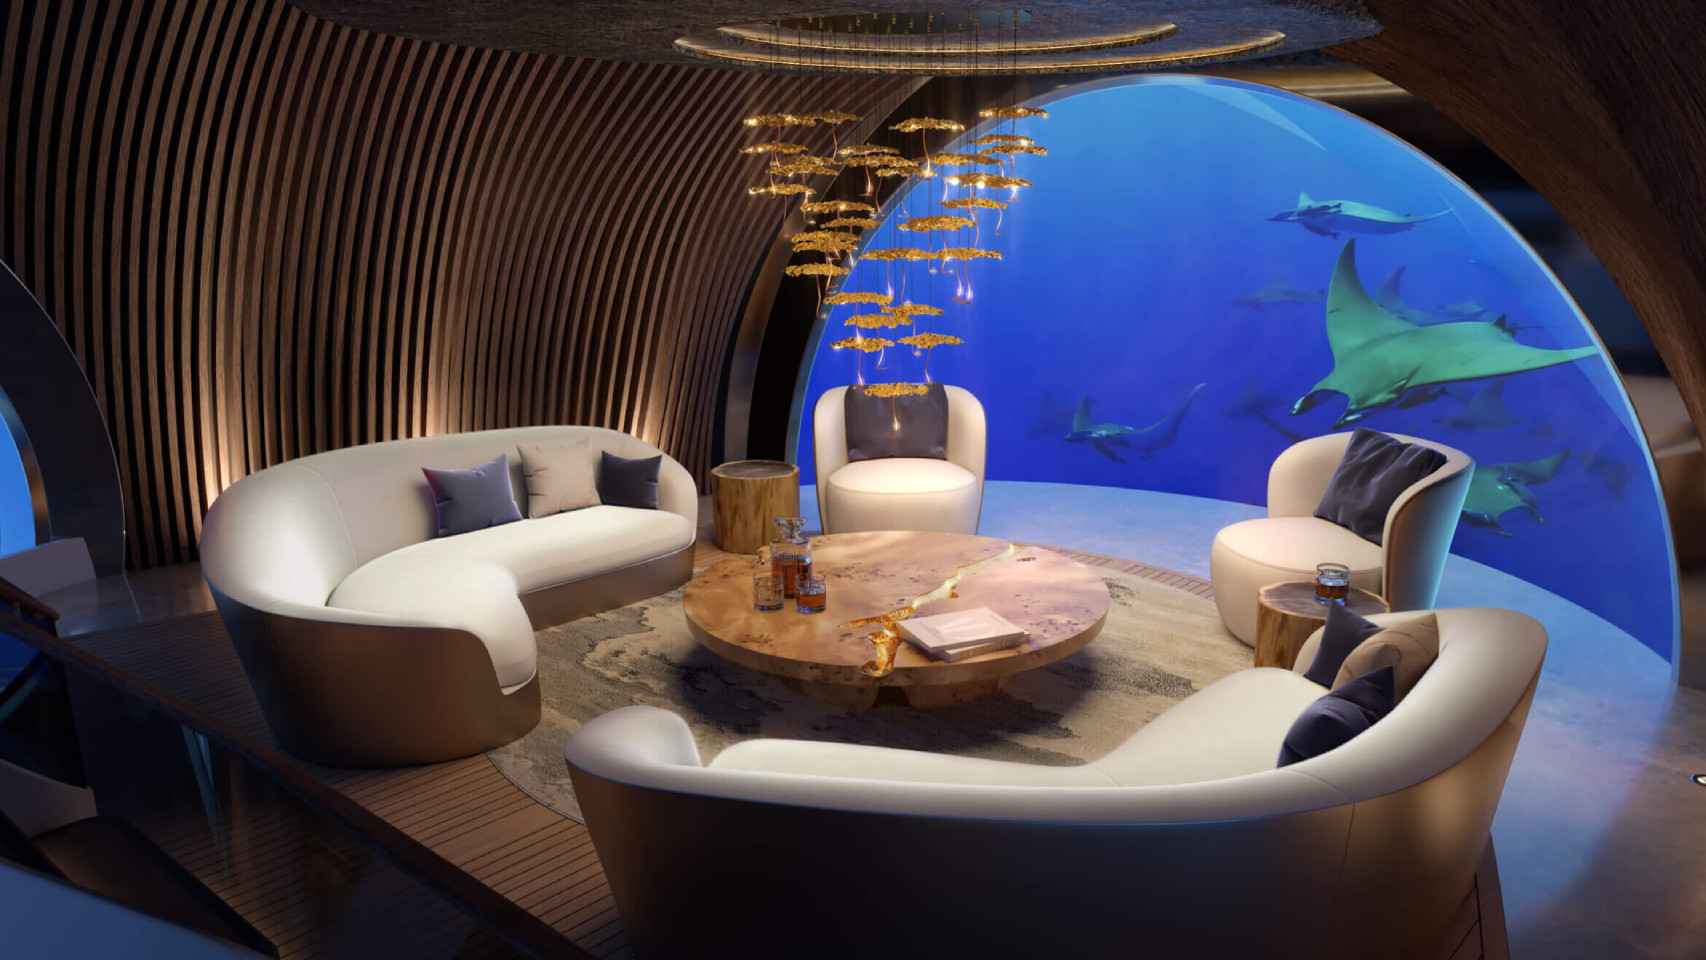 Diseños del interior del yate Nautilus